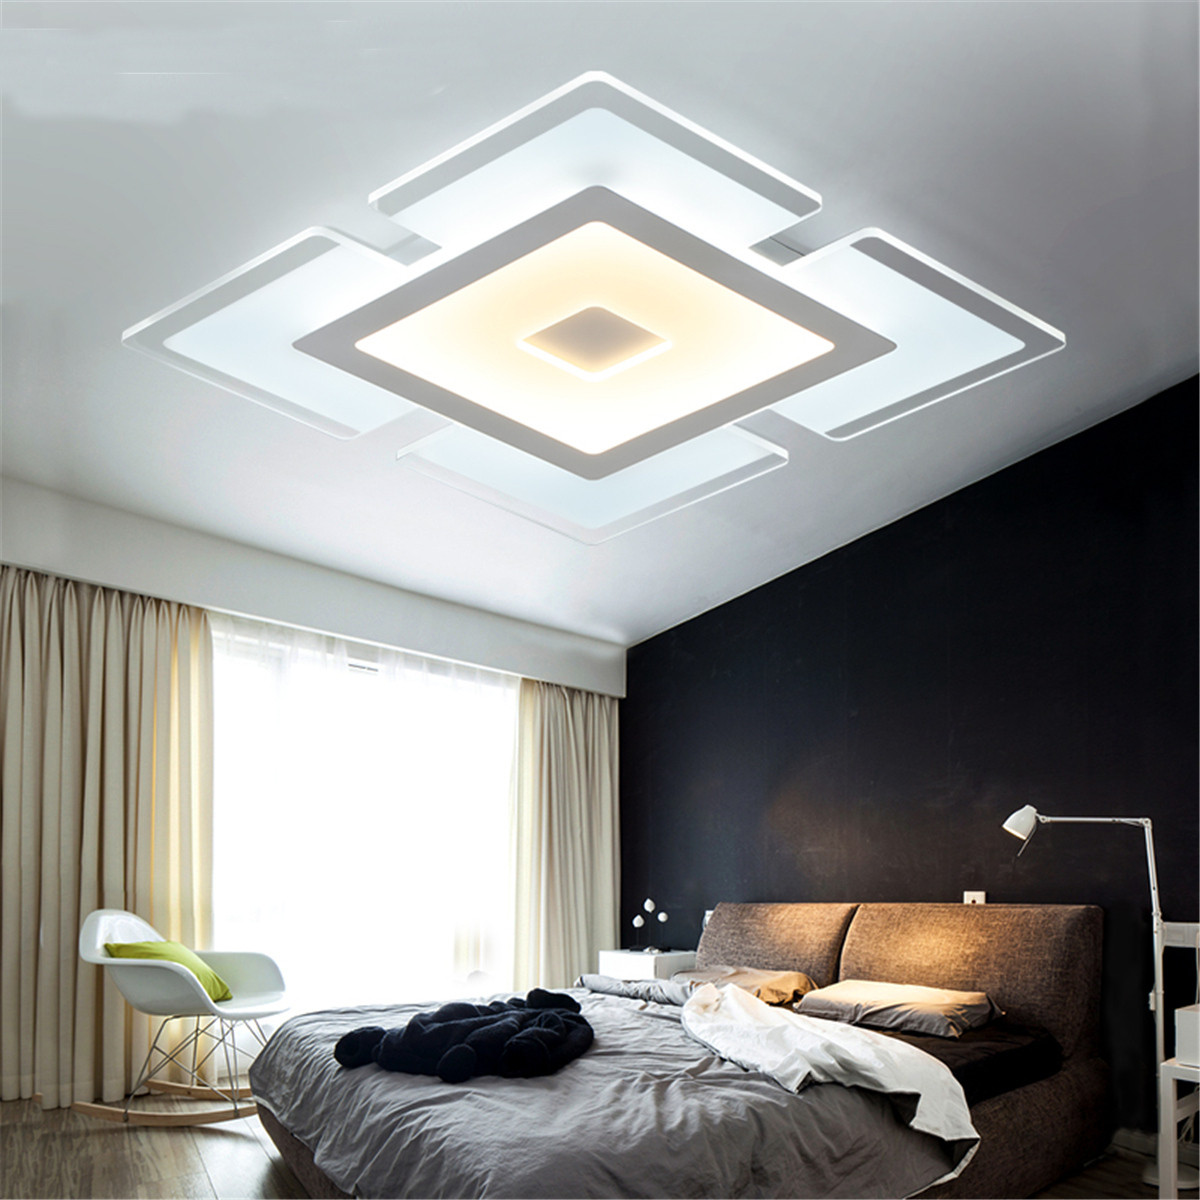 Led Lighting For Living Room
 Modern Elegant Square Acrylic LED Ceiling Light Living